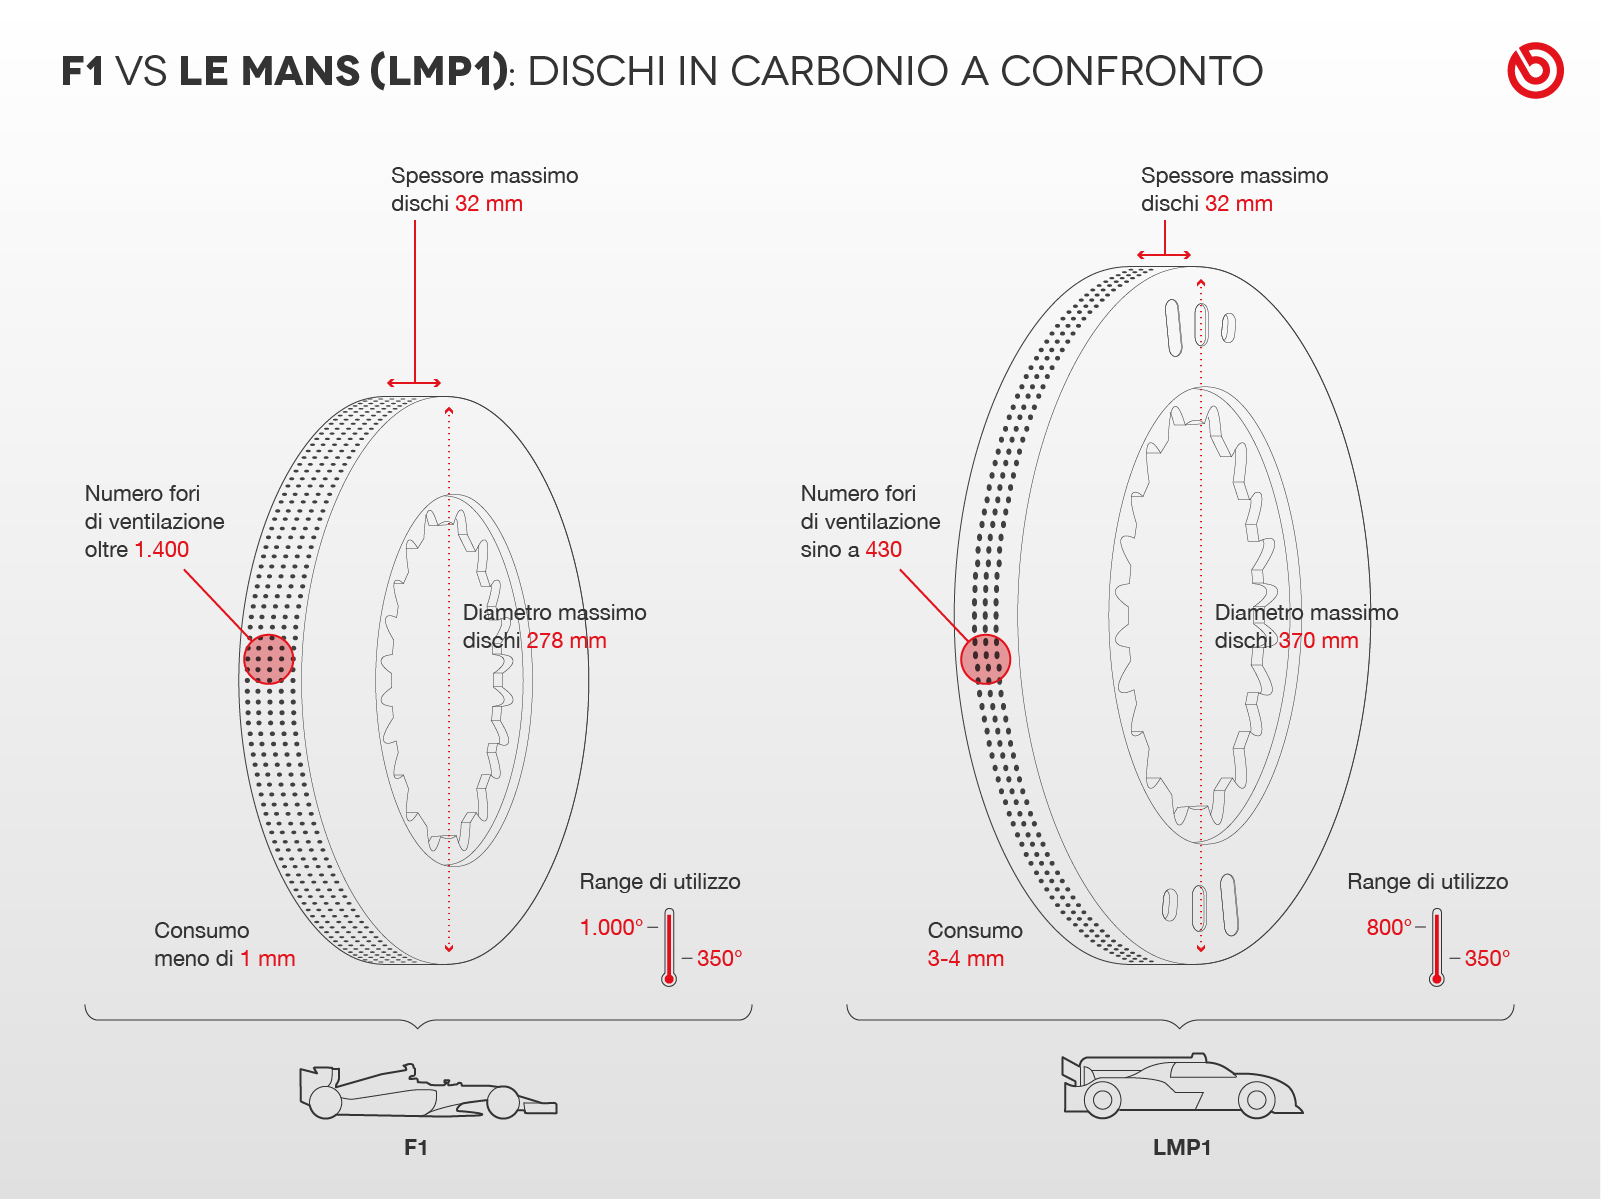 infografica confronto dischi F1 e LMP1 24 ore Le Mans